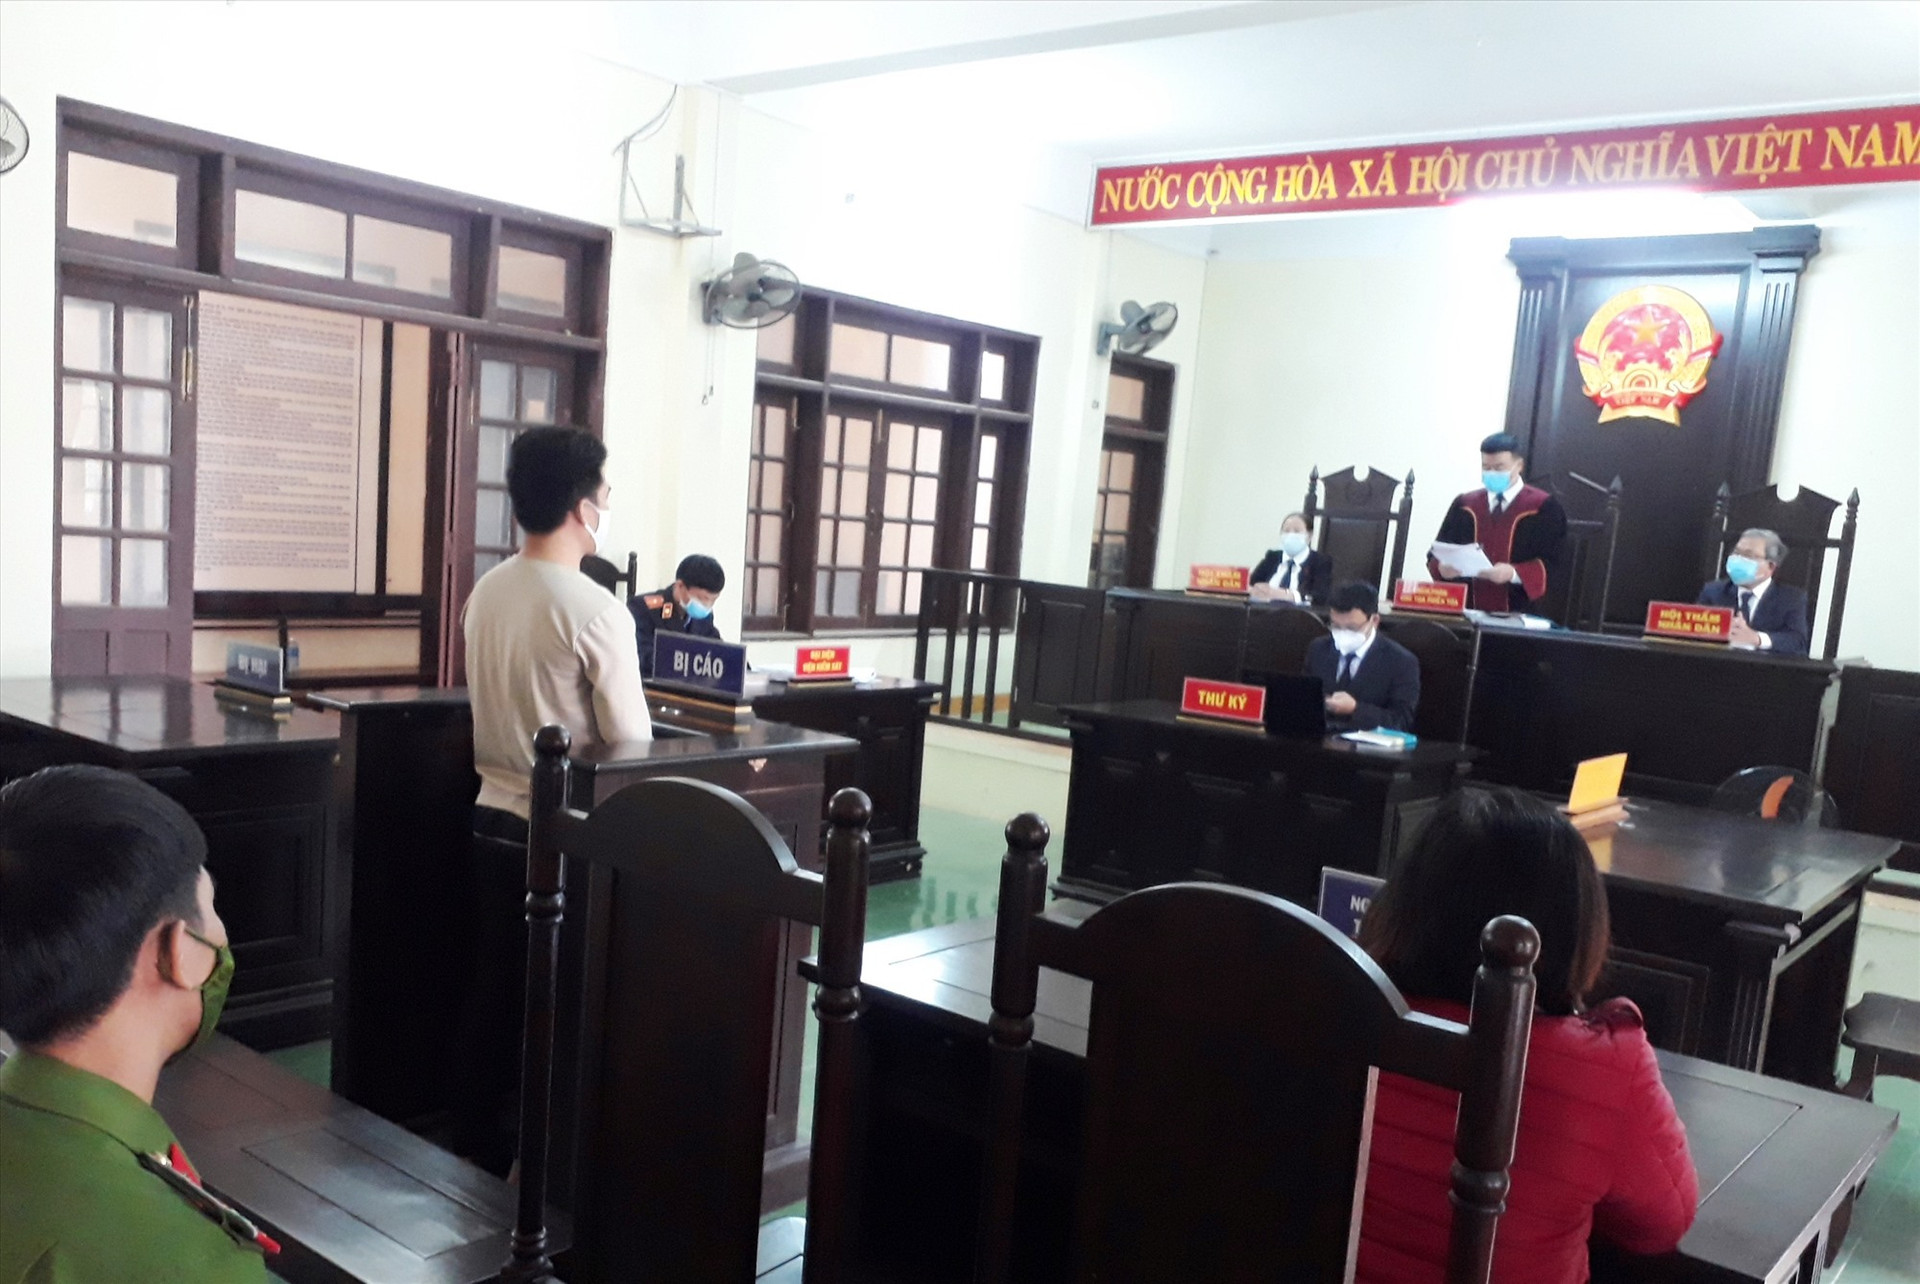 Tòa án nhân dân huyện Quế Sơn xét xử sơ thẩm bị cáo Nguyễn Minh Tiến về tội lừa đảo chiếm đoạt tài sản. ảnh DT